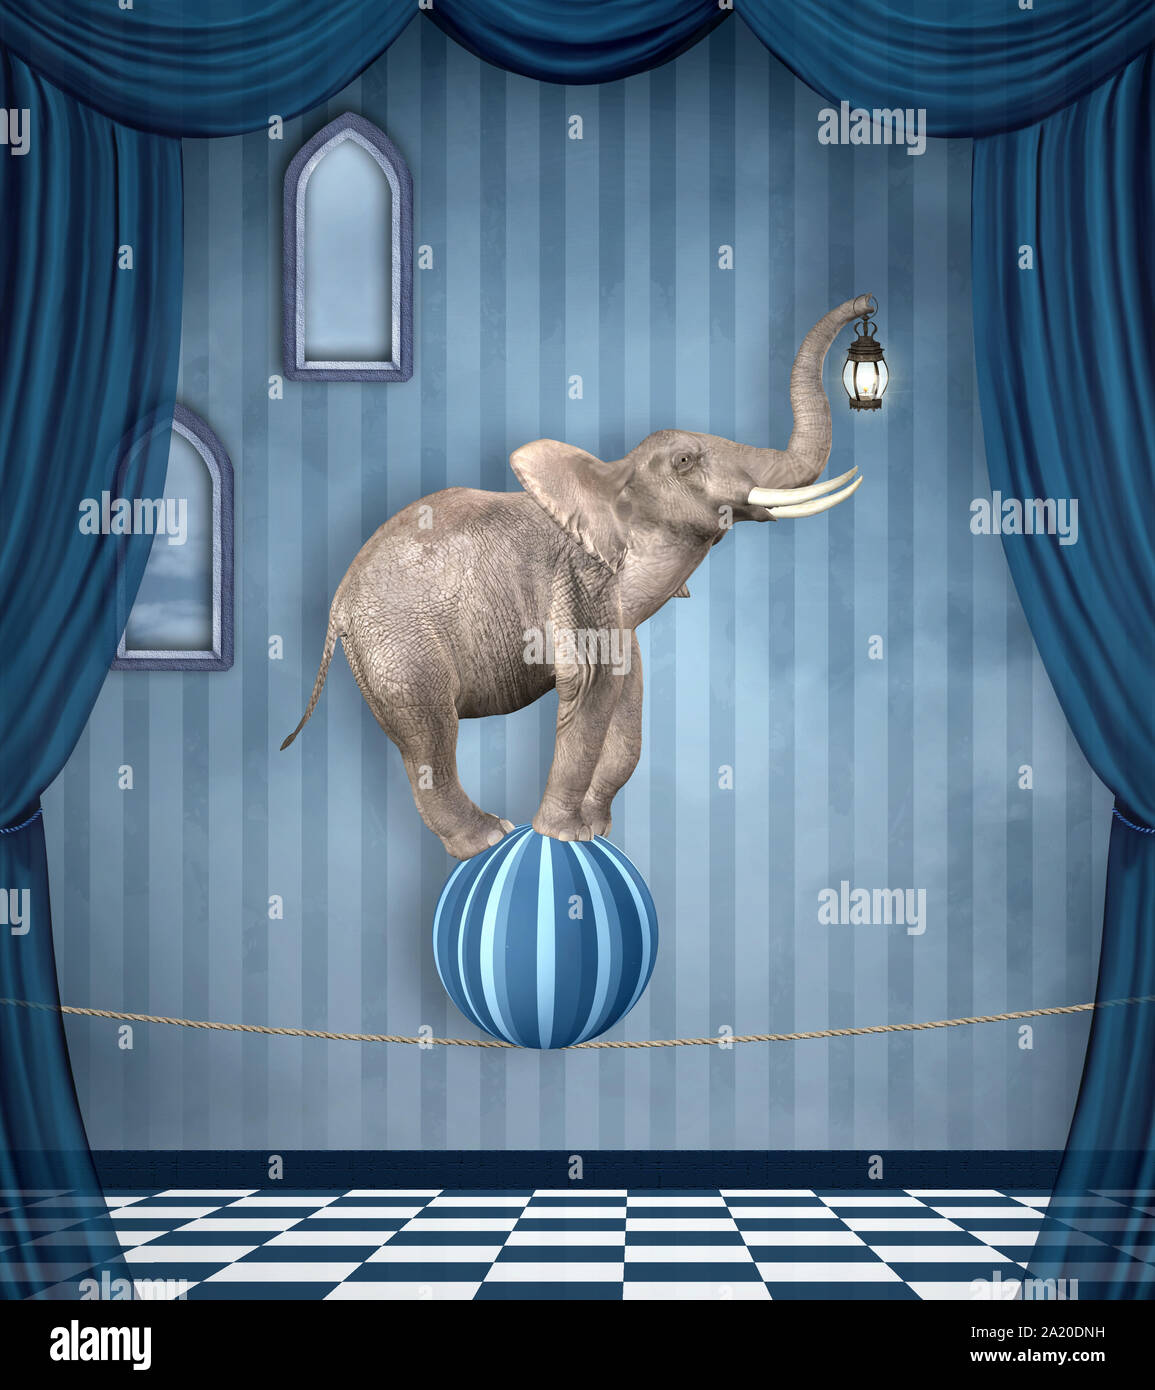 Das Konzept der Balance portayed durch ein Elefant auf einem Seil Stockfoto